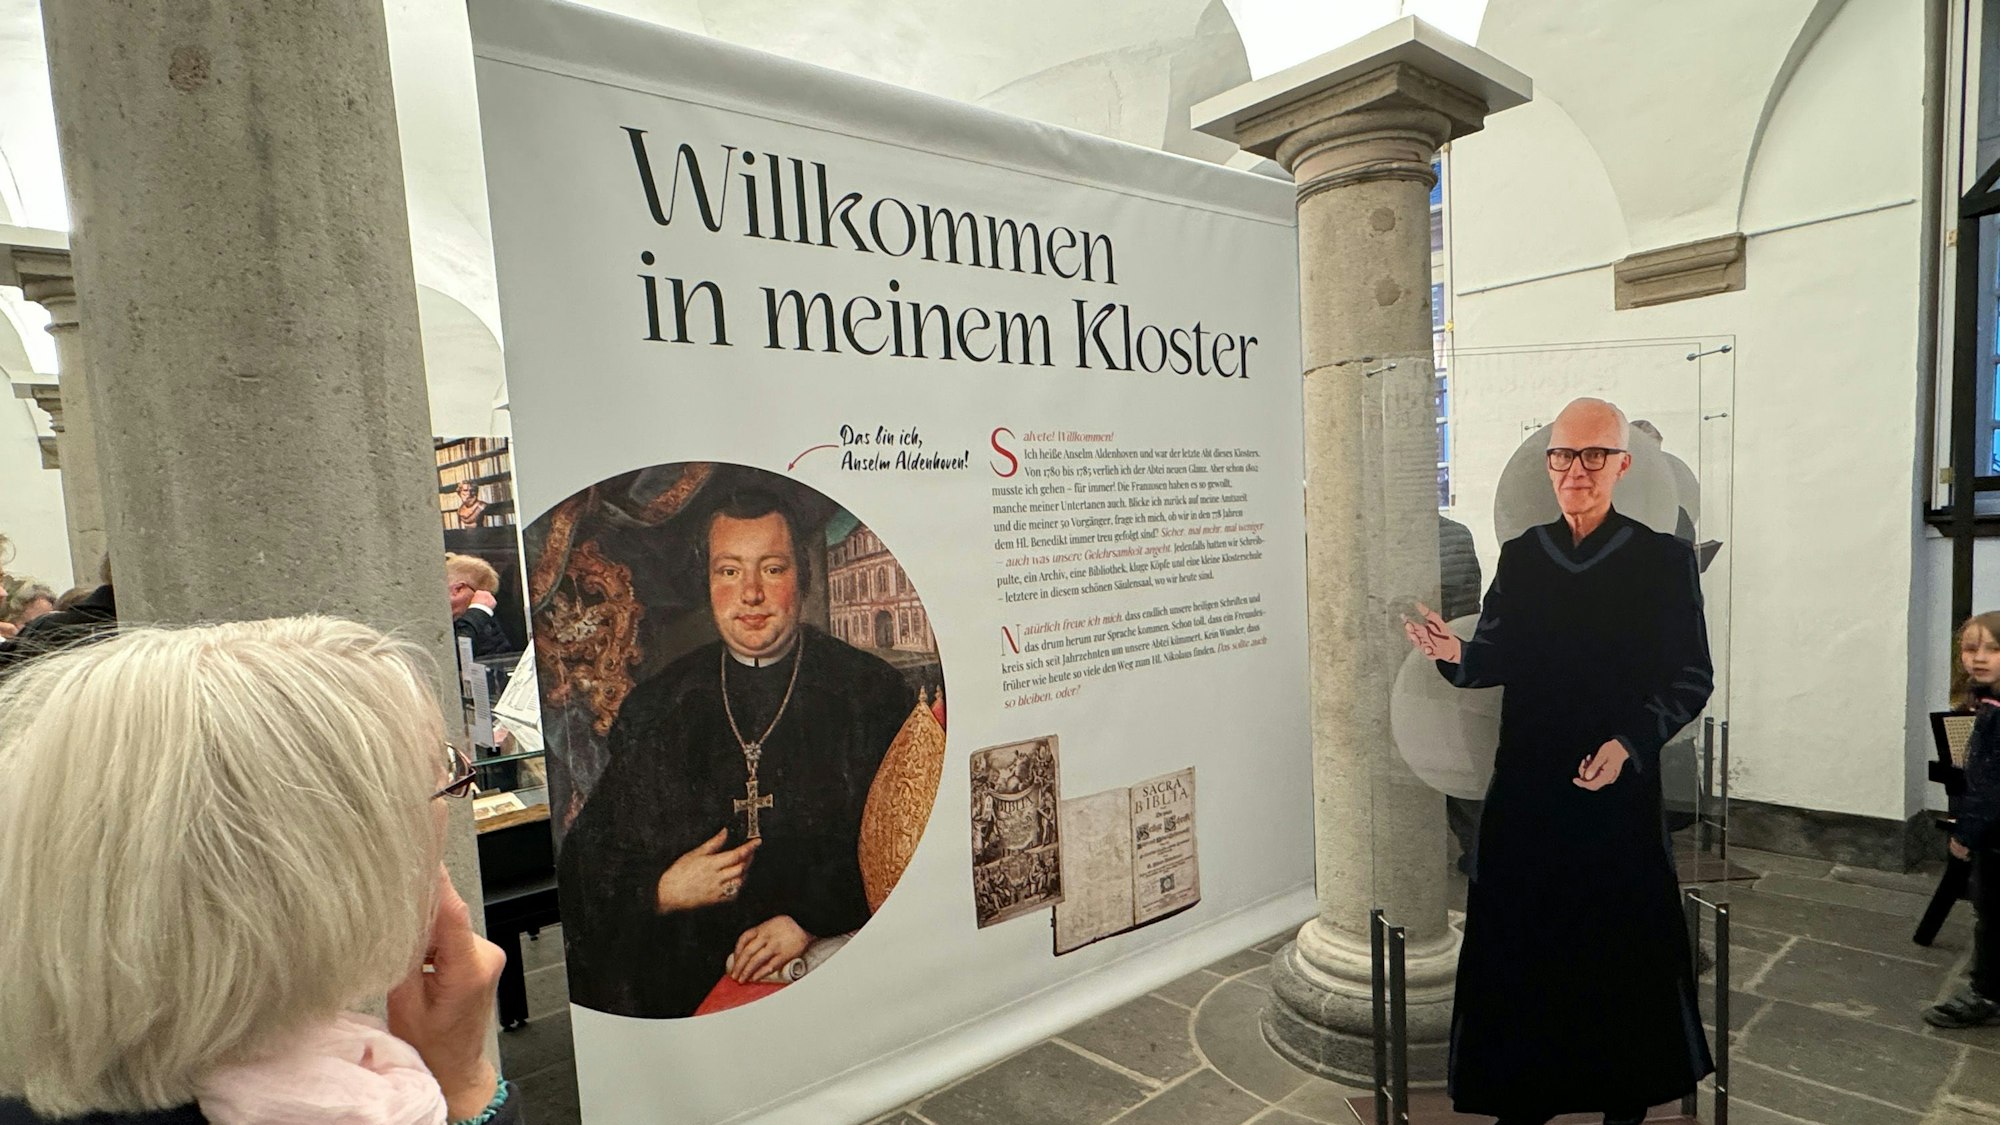 Zu sehen ist eine große Schautafel neben der eine Pappfigur Jürgen Rüttgers in Mönchsgewand zeigt.